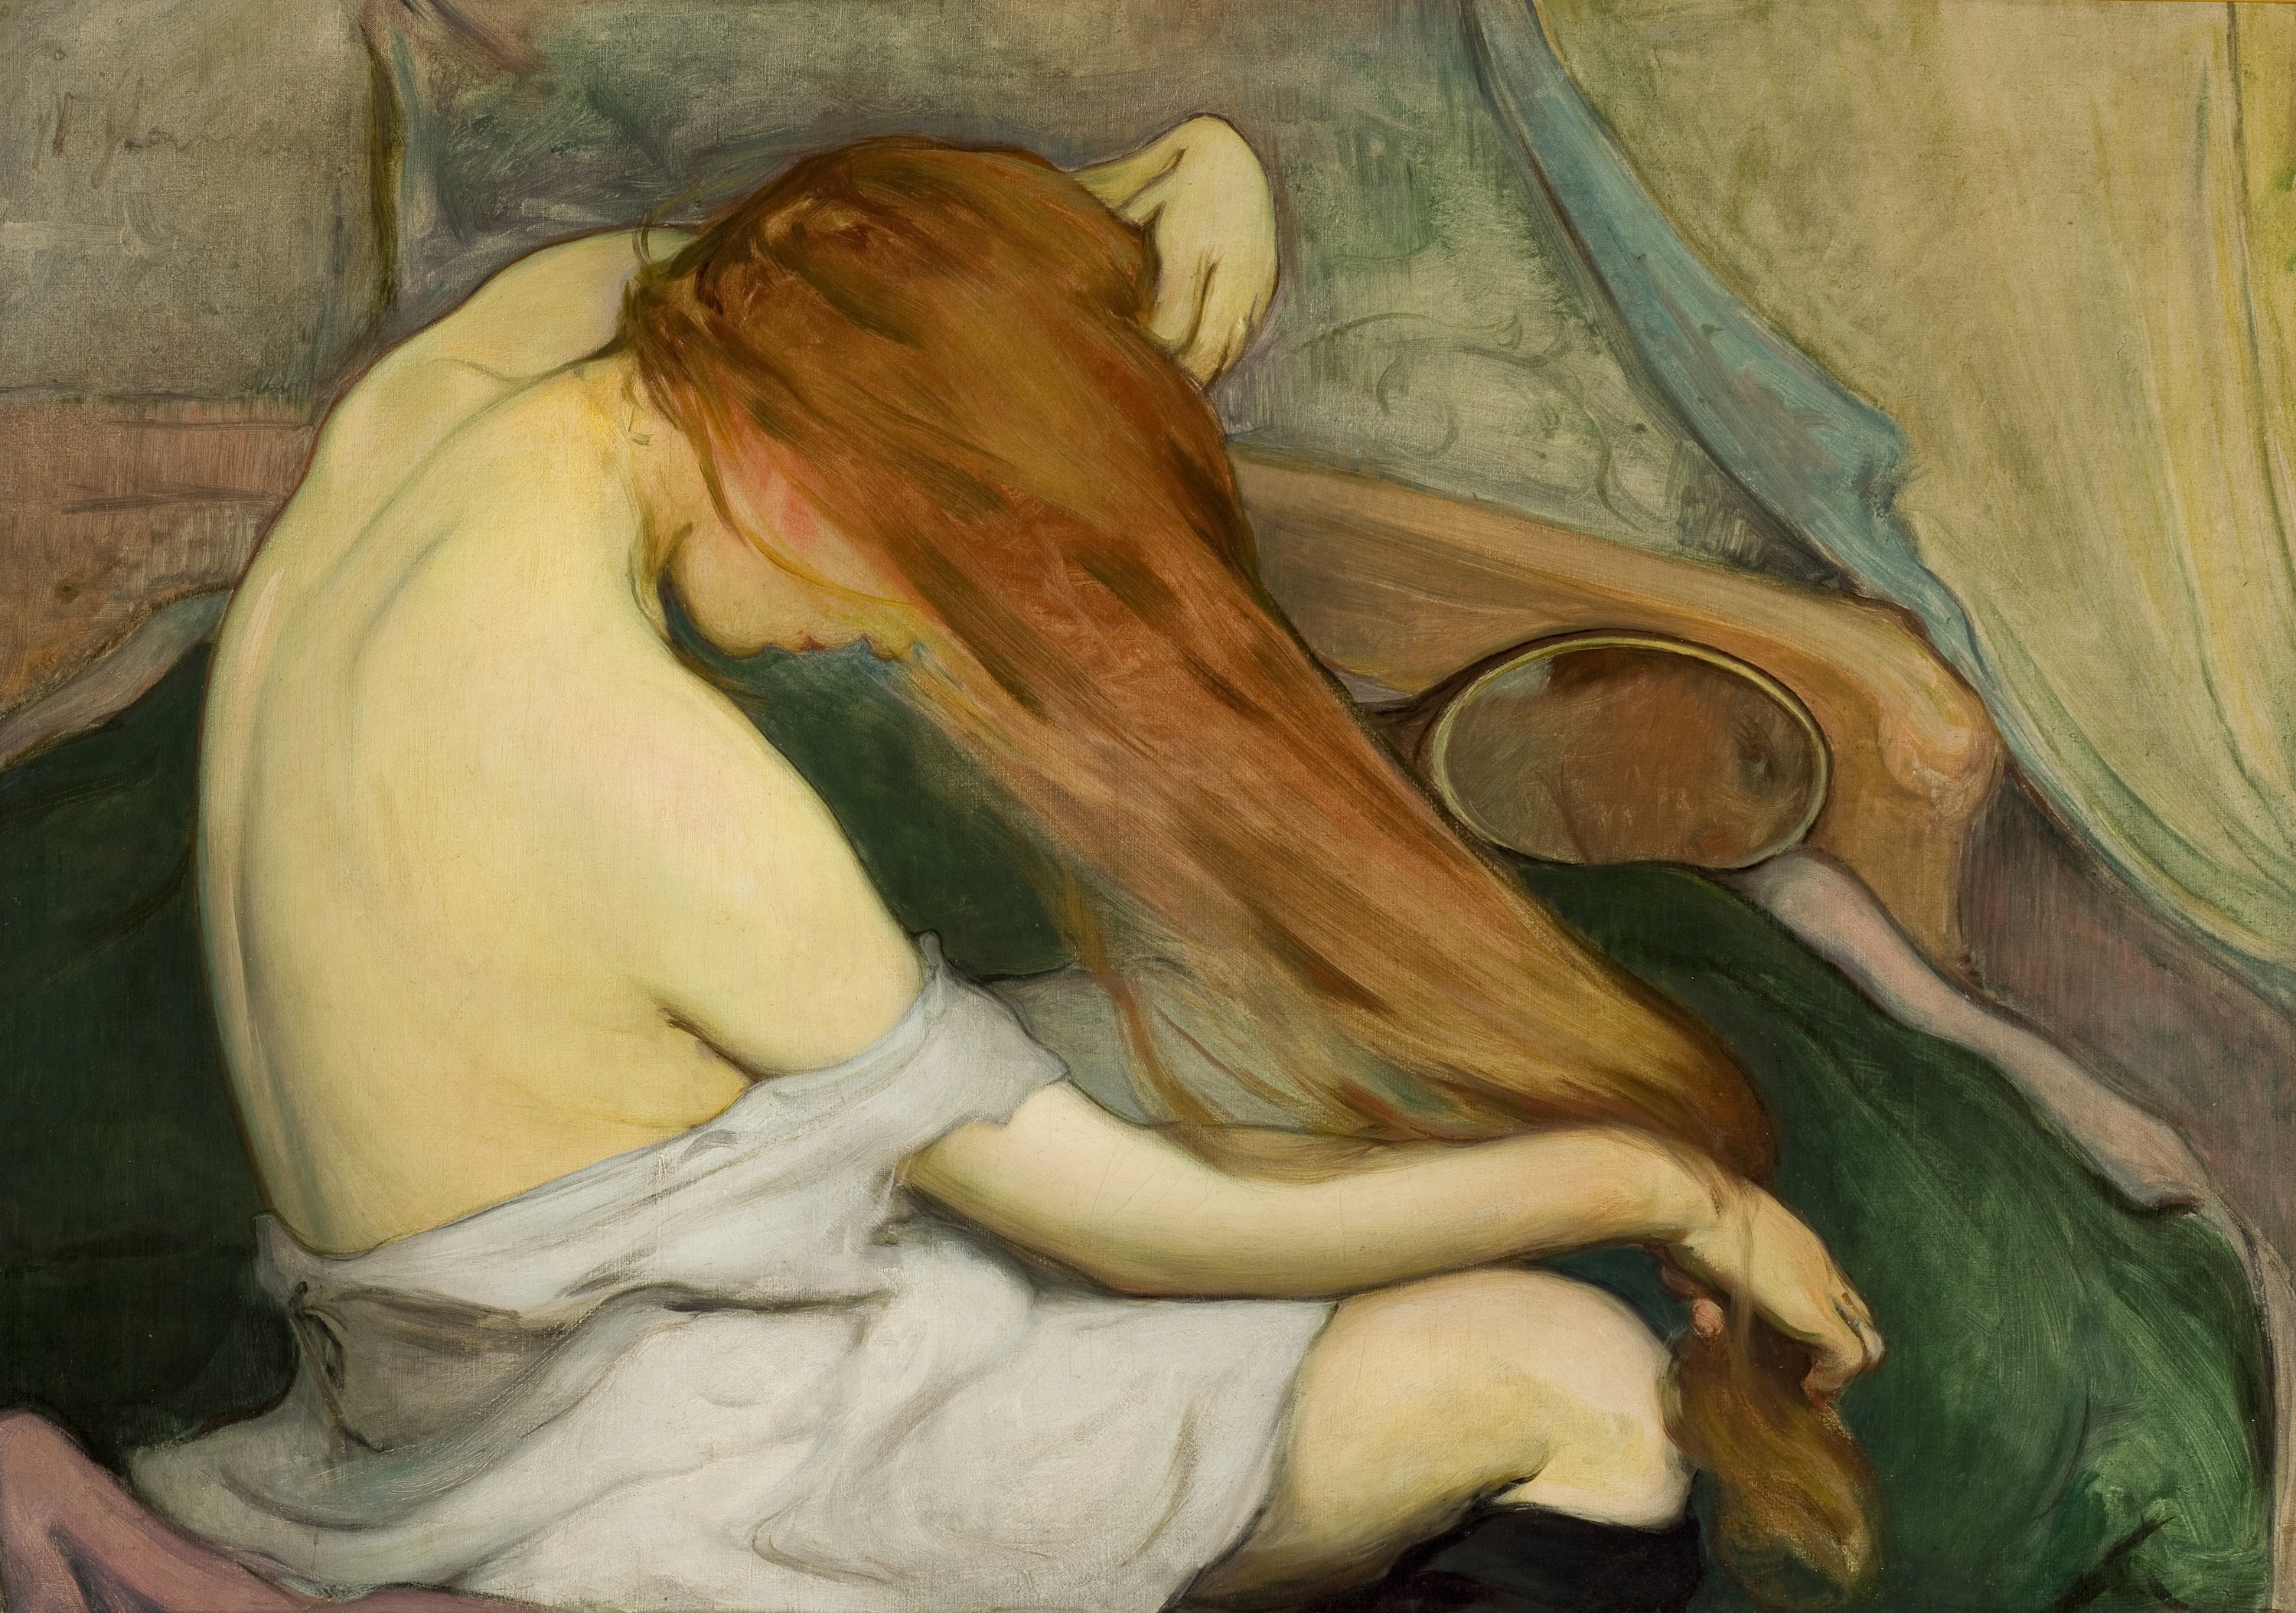 Žena česající si vlasy by Wladyslaw Slewinski - 1897 - 64 x 91 cm 